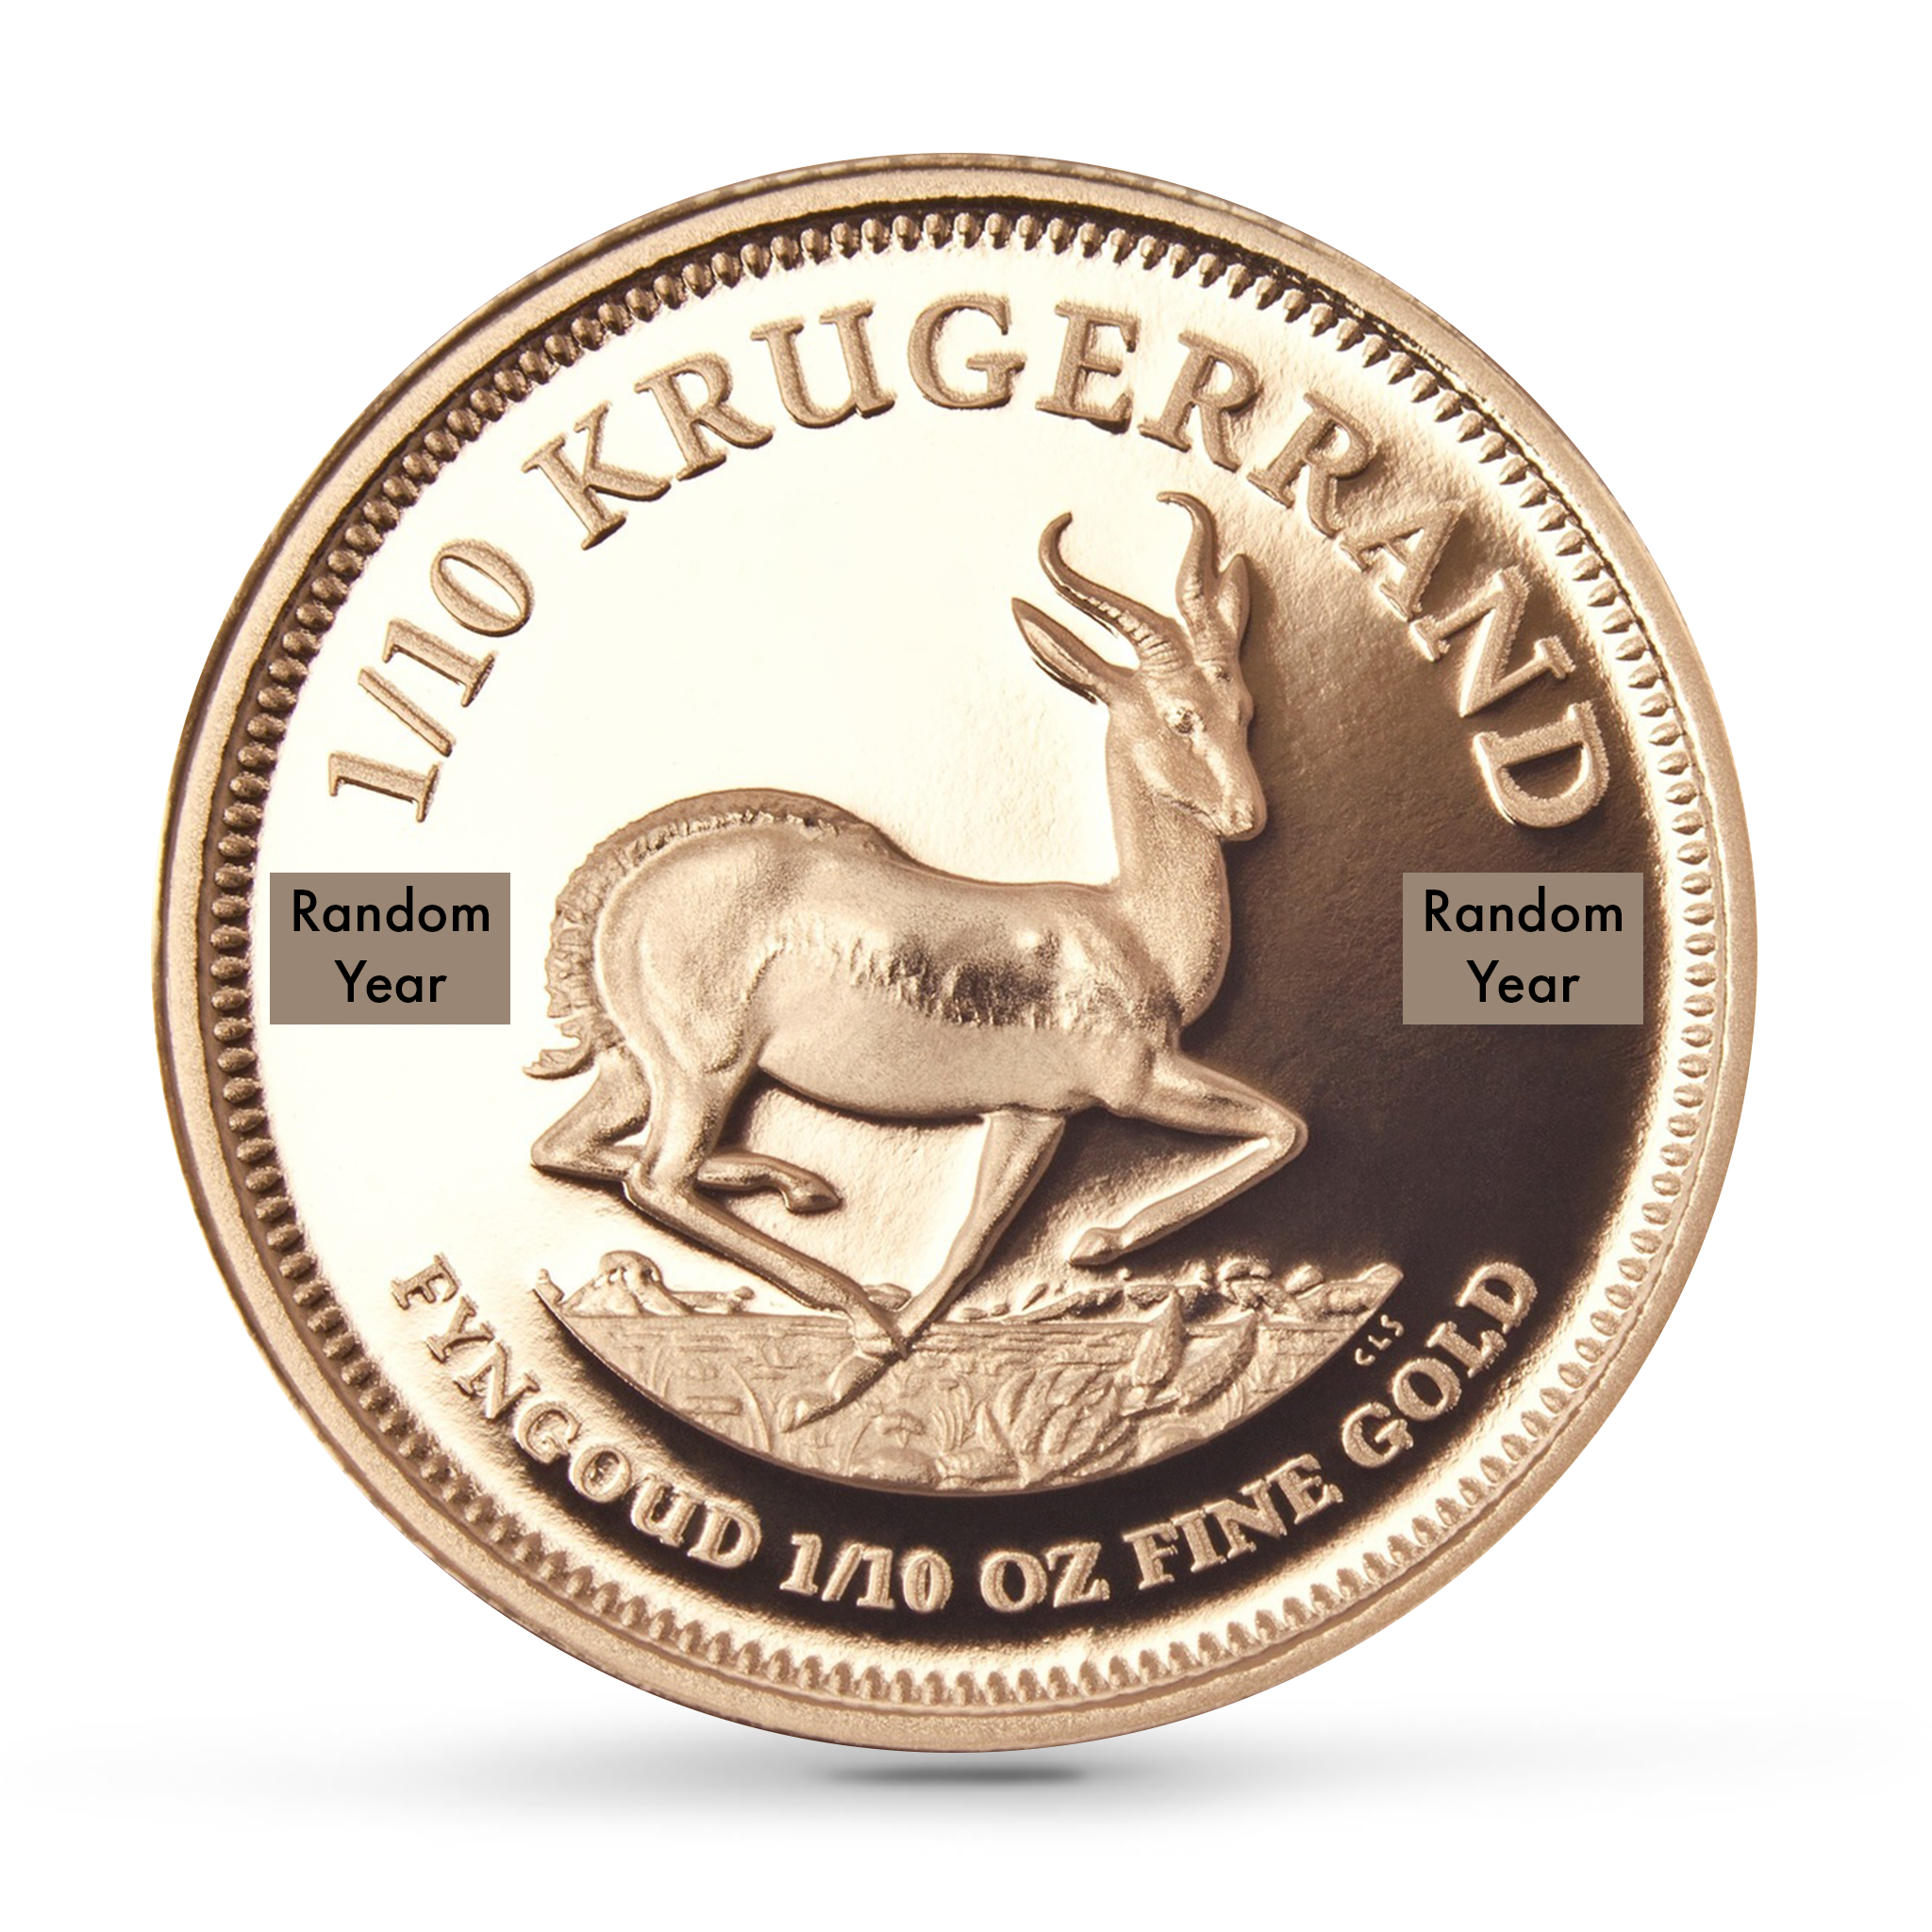 1/10oz Proof Krugerrand Gold Coin